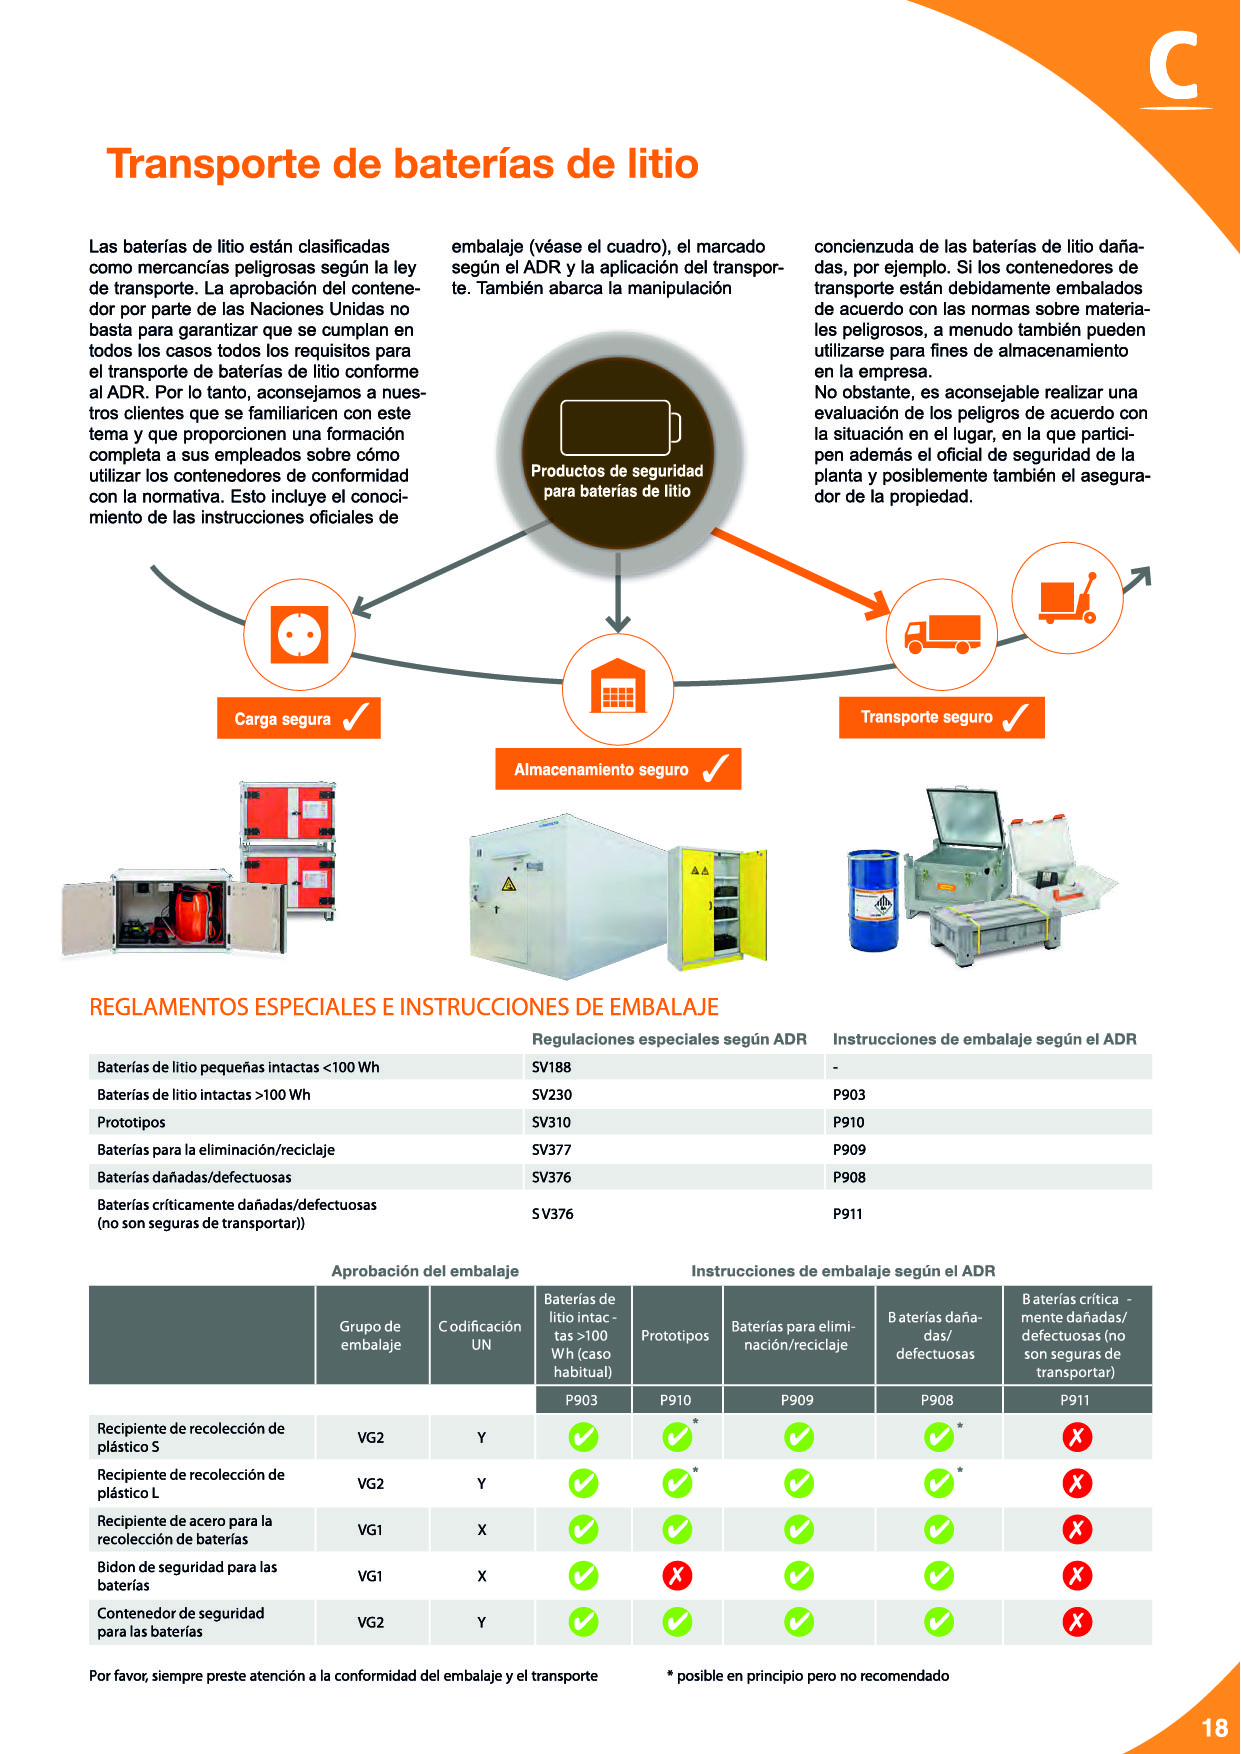 Baterías de litio: Seguridad para el almacenamiento, carga y transporte19